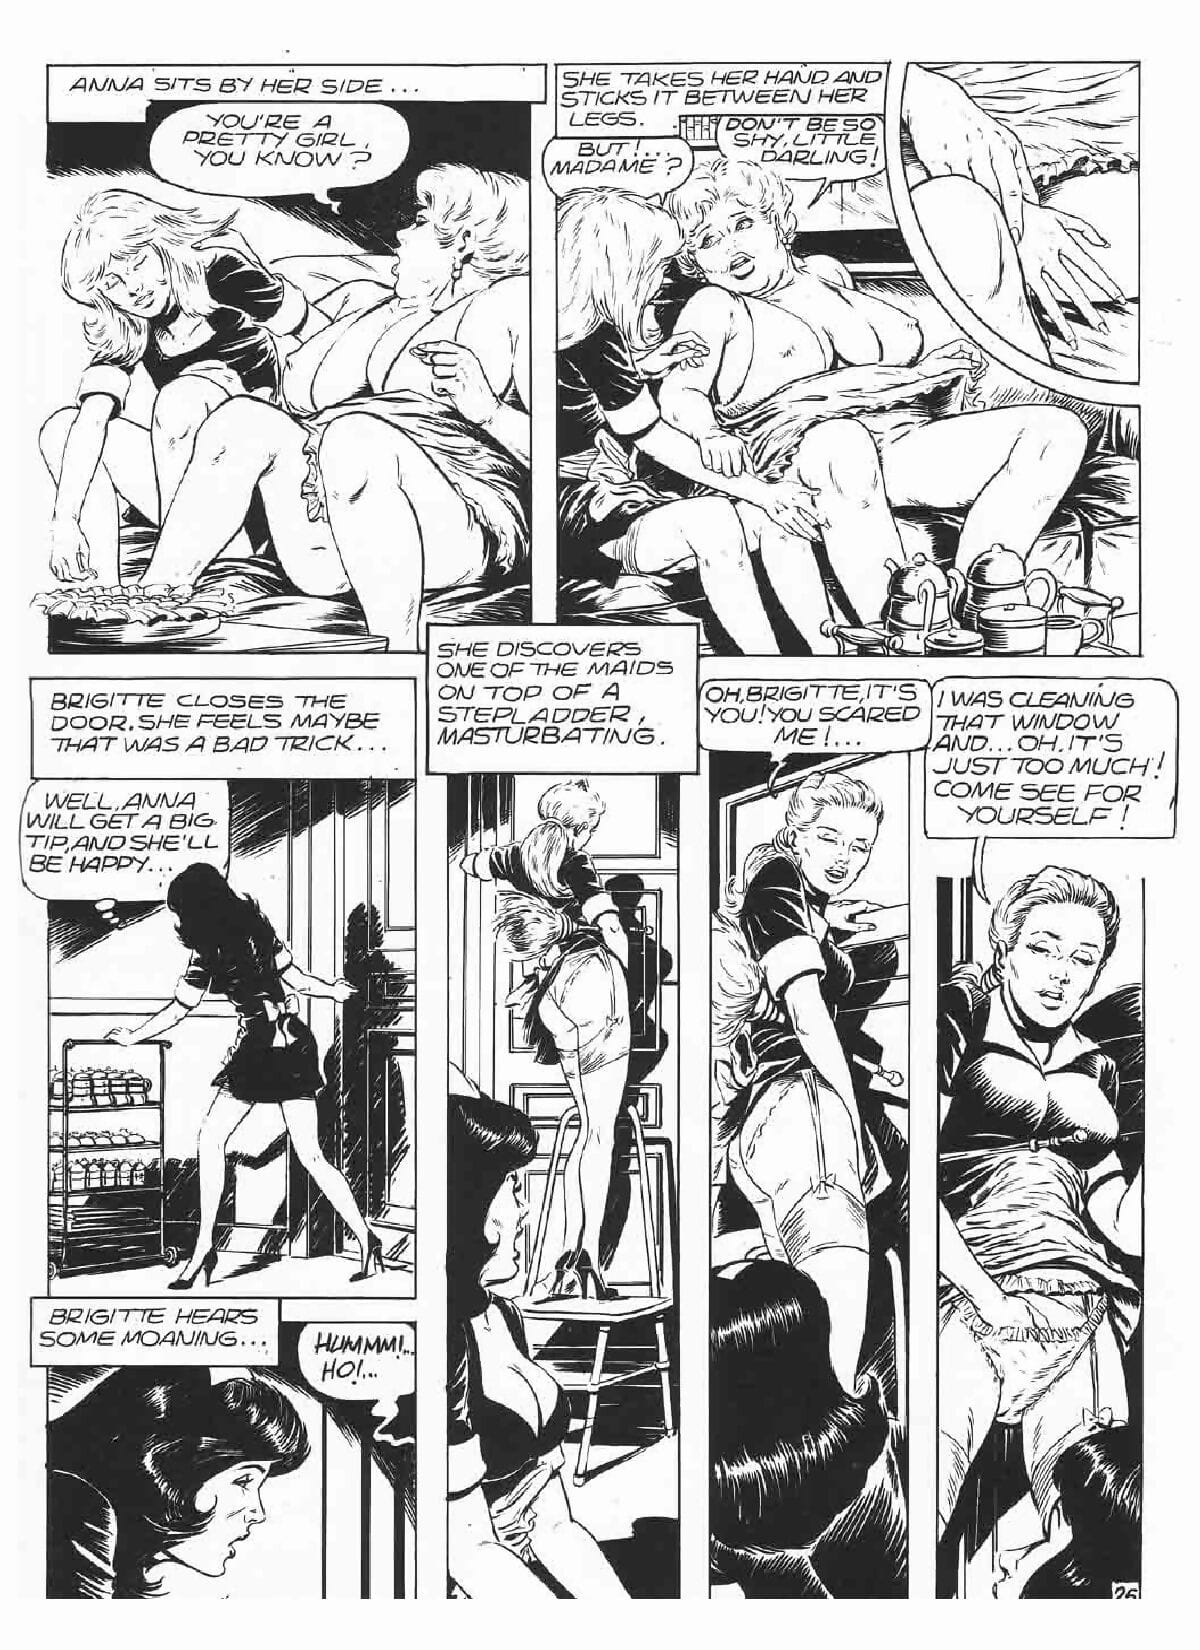 Brigitte De Luxe Maid #3 page 1